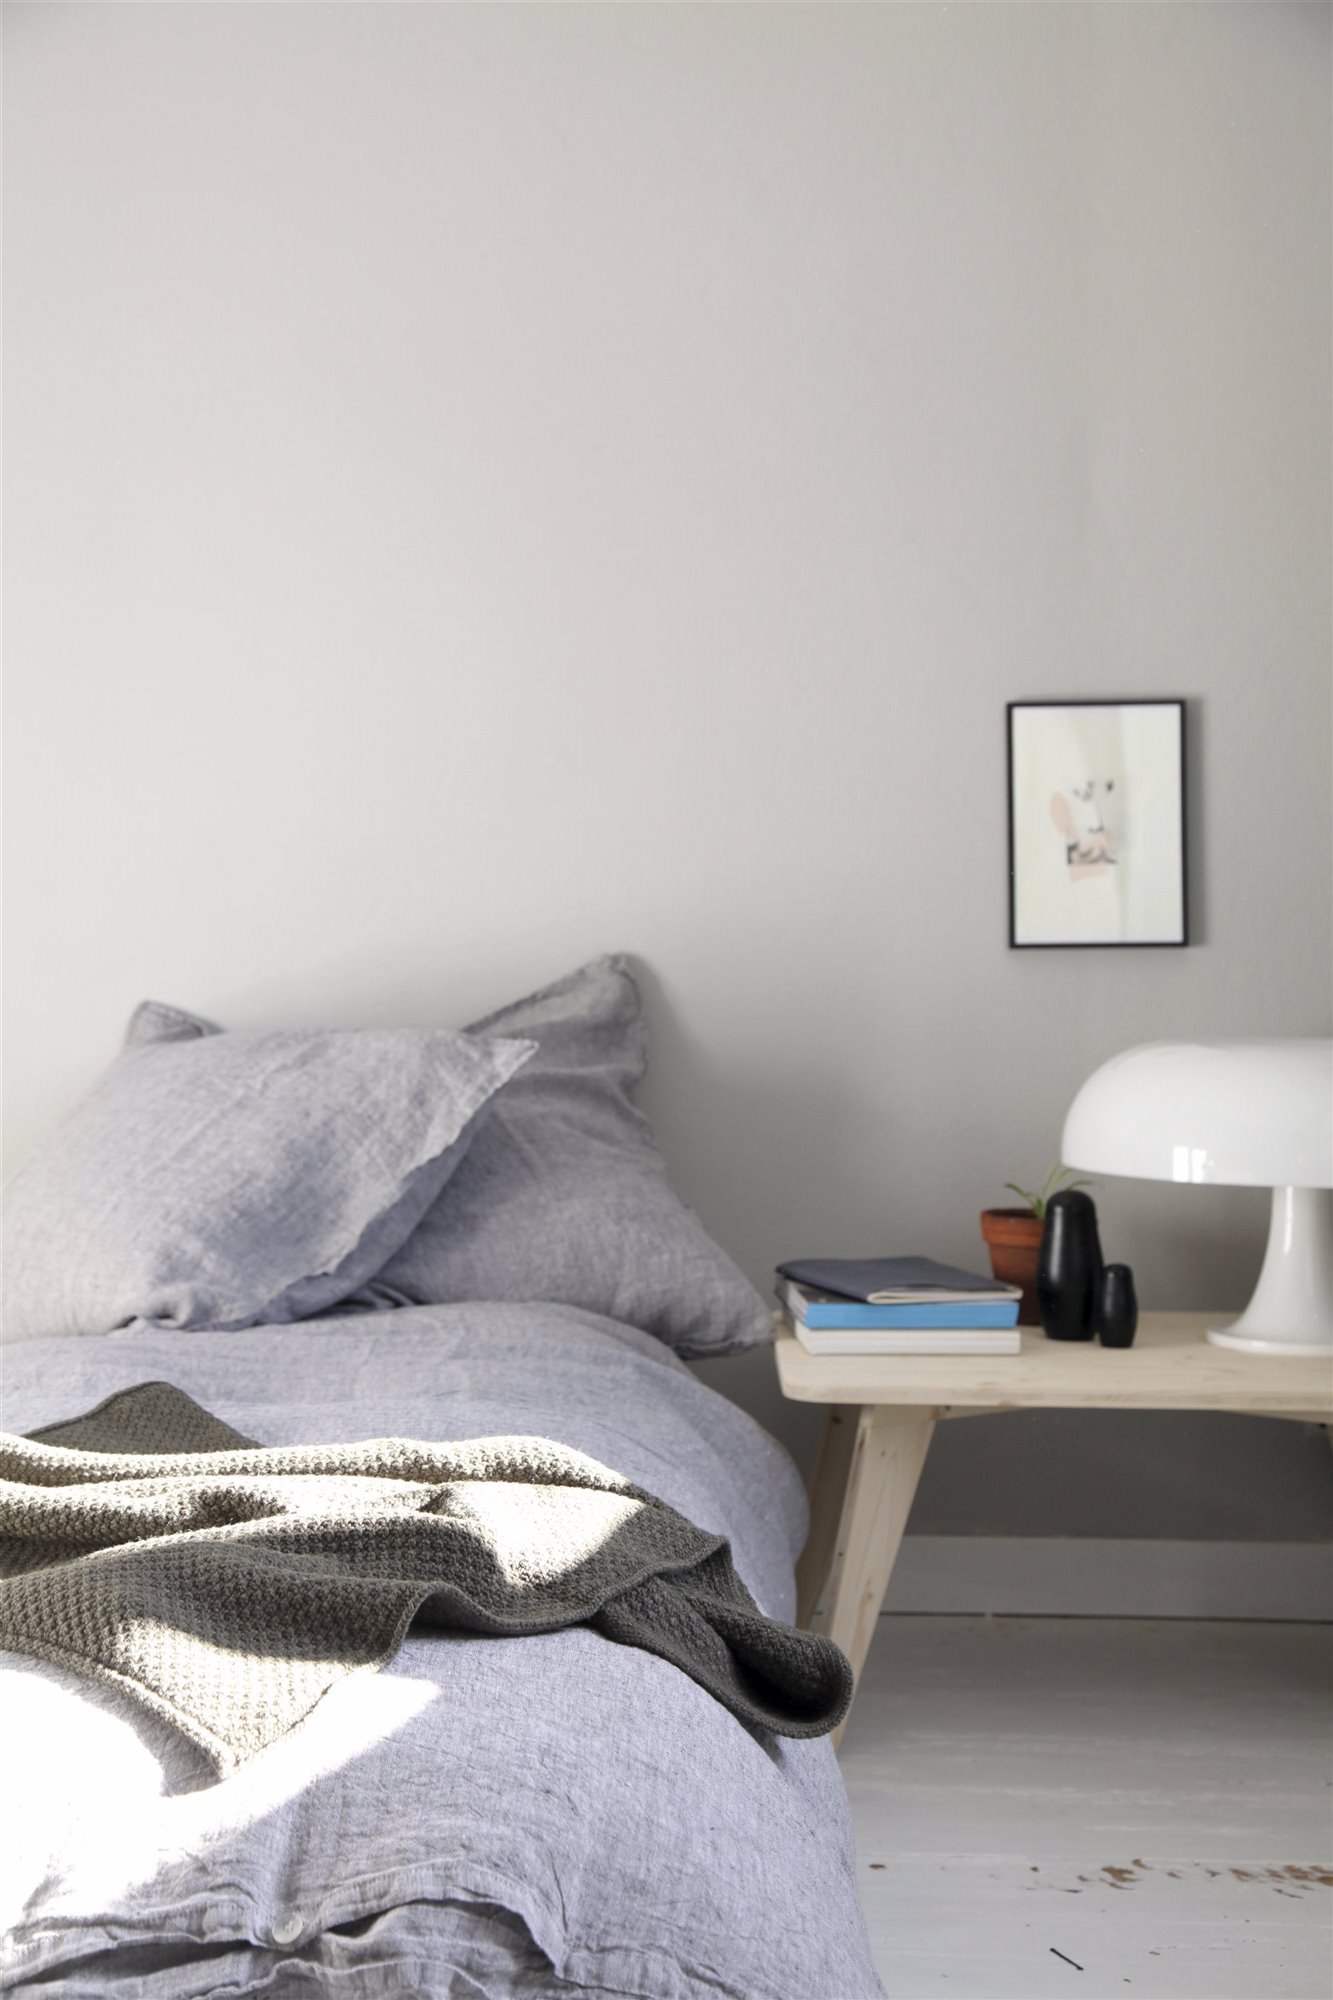 dormitorio minimalista con cama lavanda, banco de madera y lámpara seta blanca